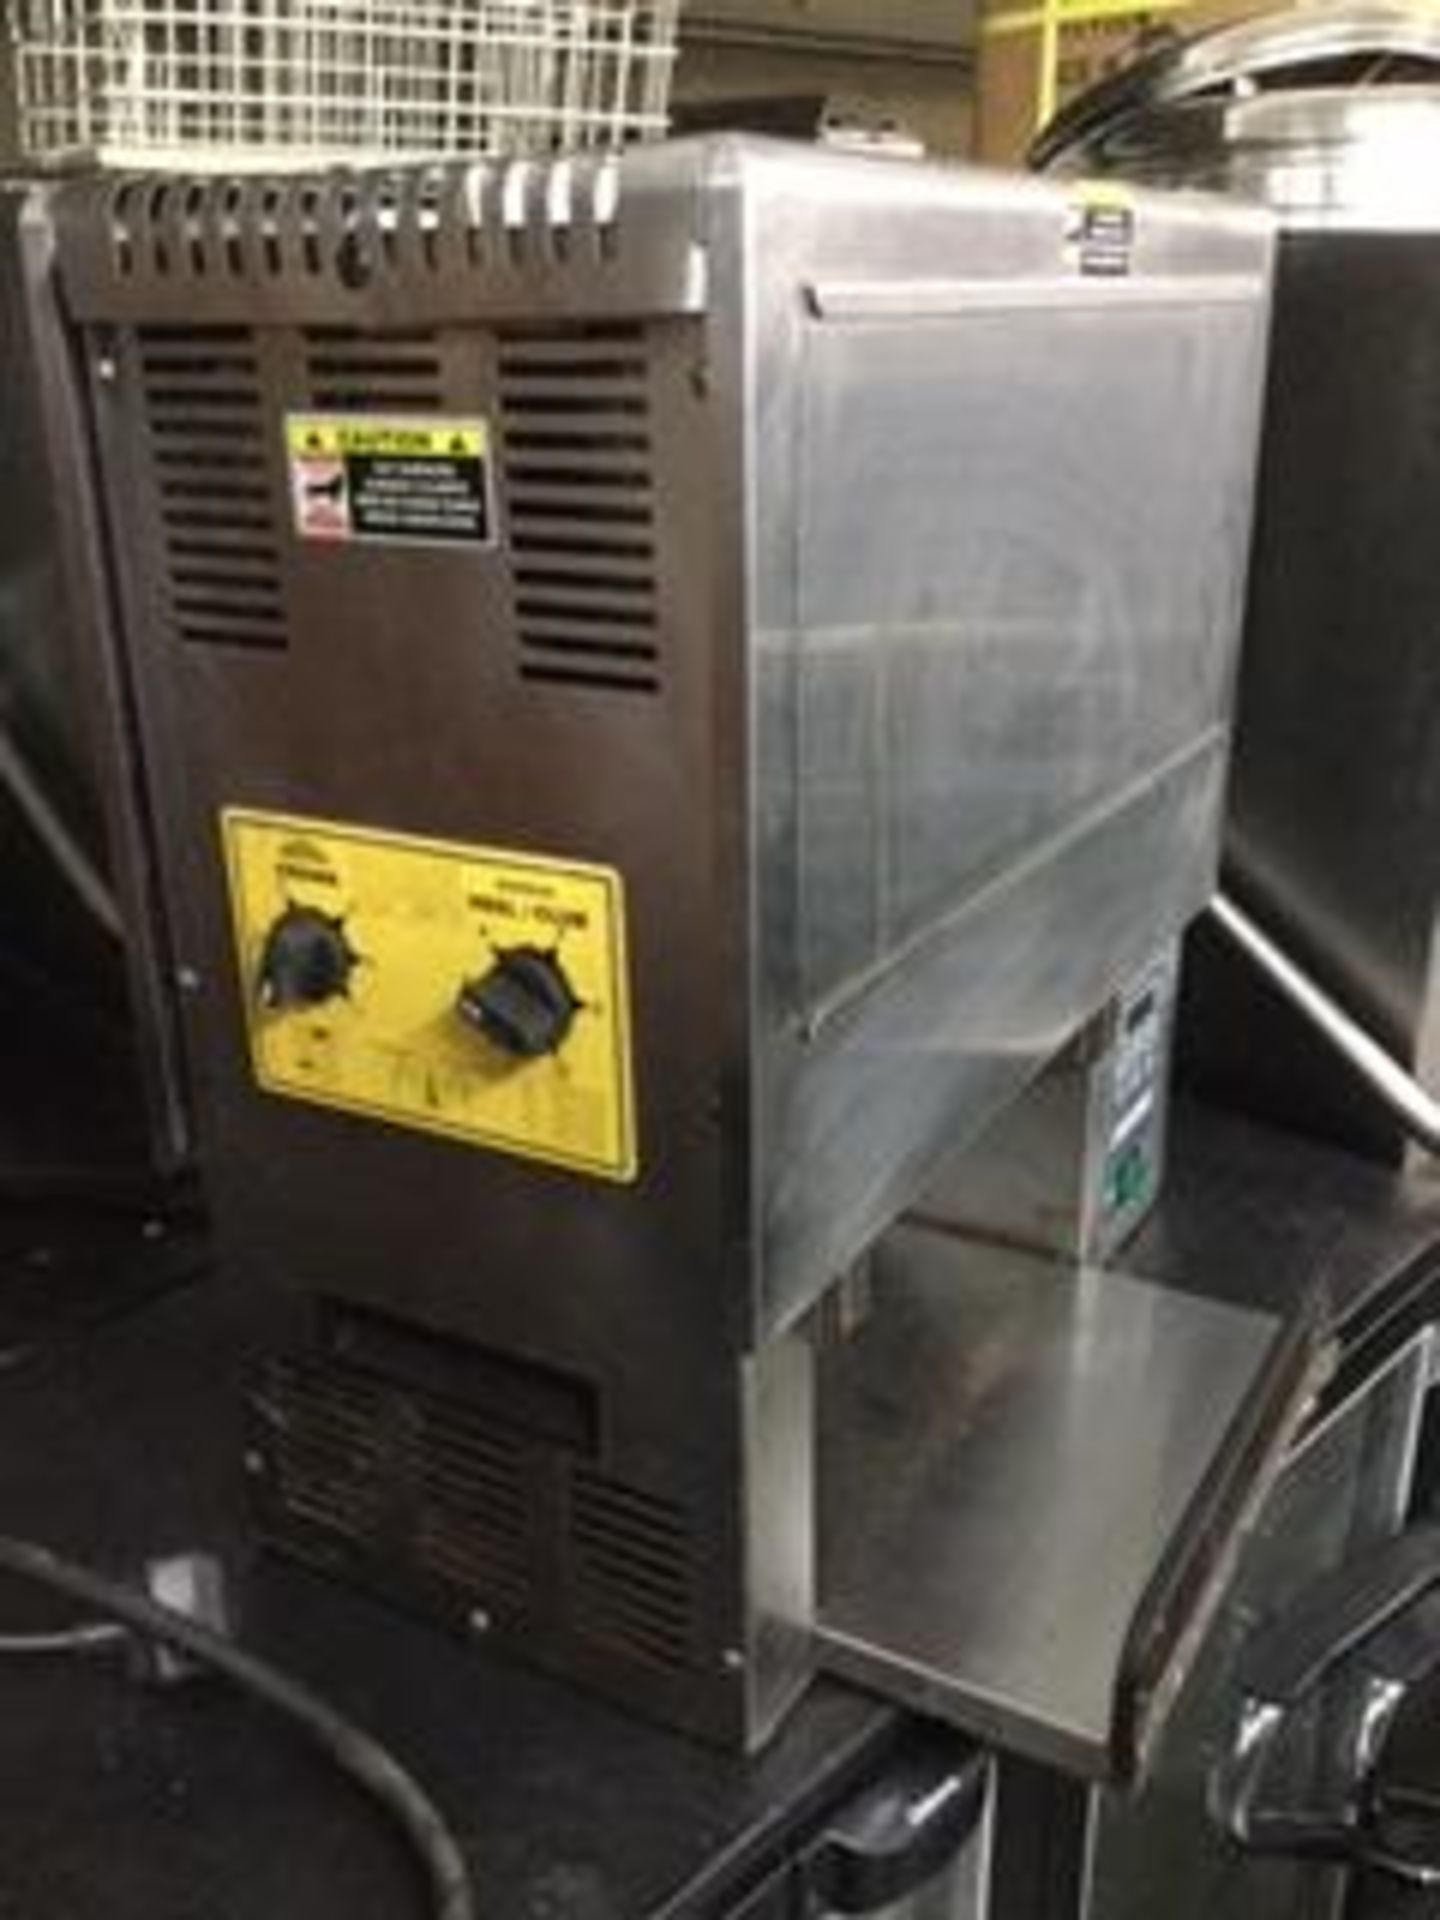 Round up Bun Conveyor Toaster – Digital – NO VAT